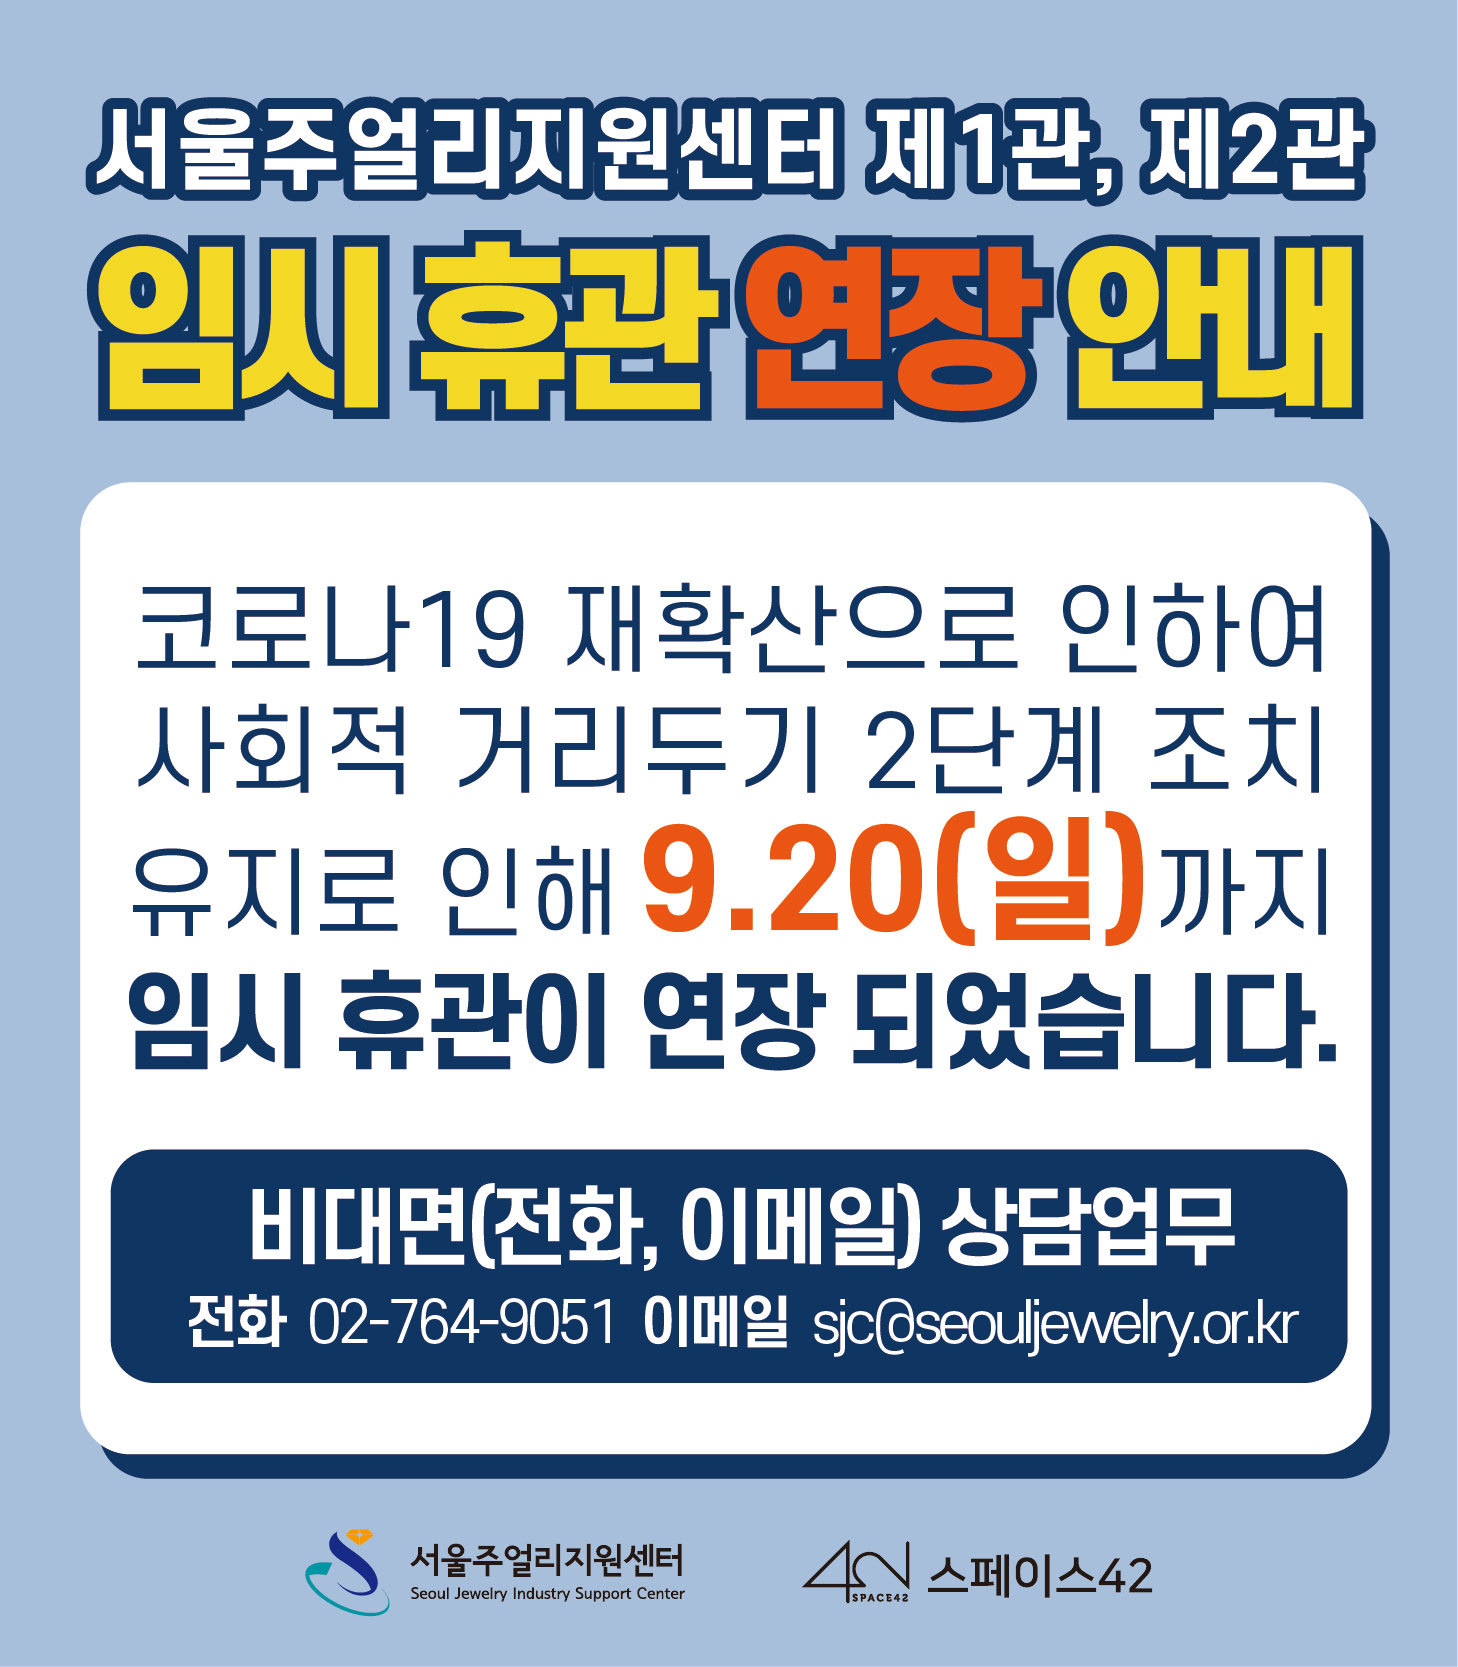 서울주얼리지원센터 제1관, 제2관 임시 휴관 연장 안내(~9월 20일까지)